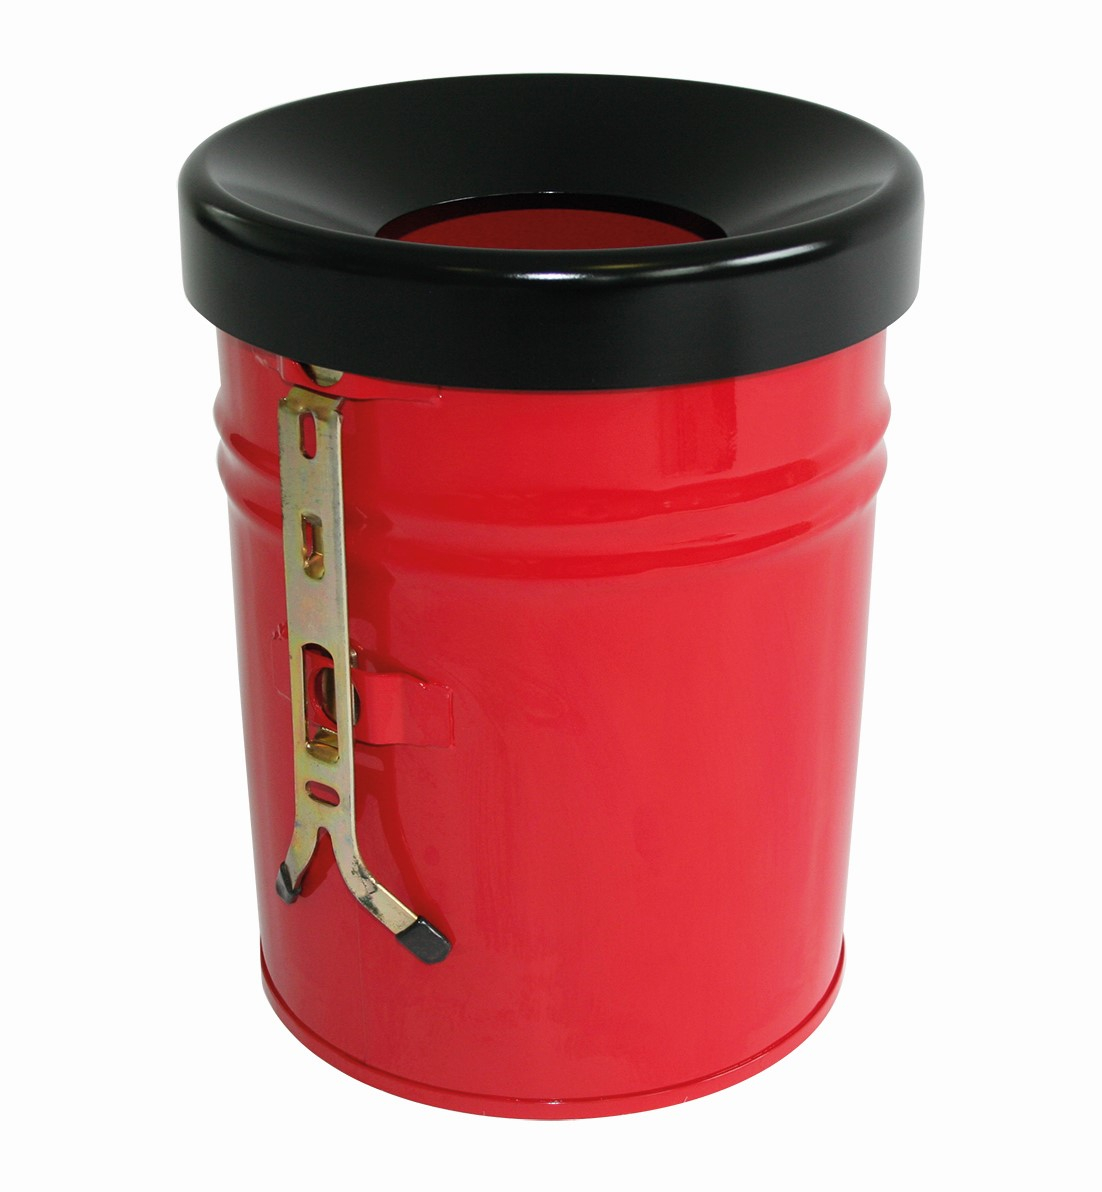 Selbstlöschender Abfallbehälter FIRE EX zur Wandbefestigung, 24 l, rot, Kopfteil schwarz Standard 1 ZOOM